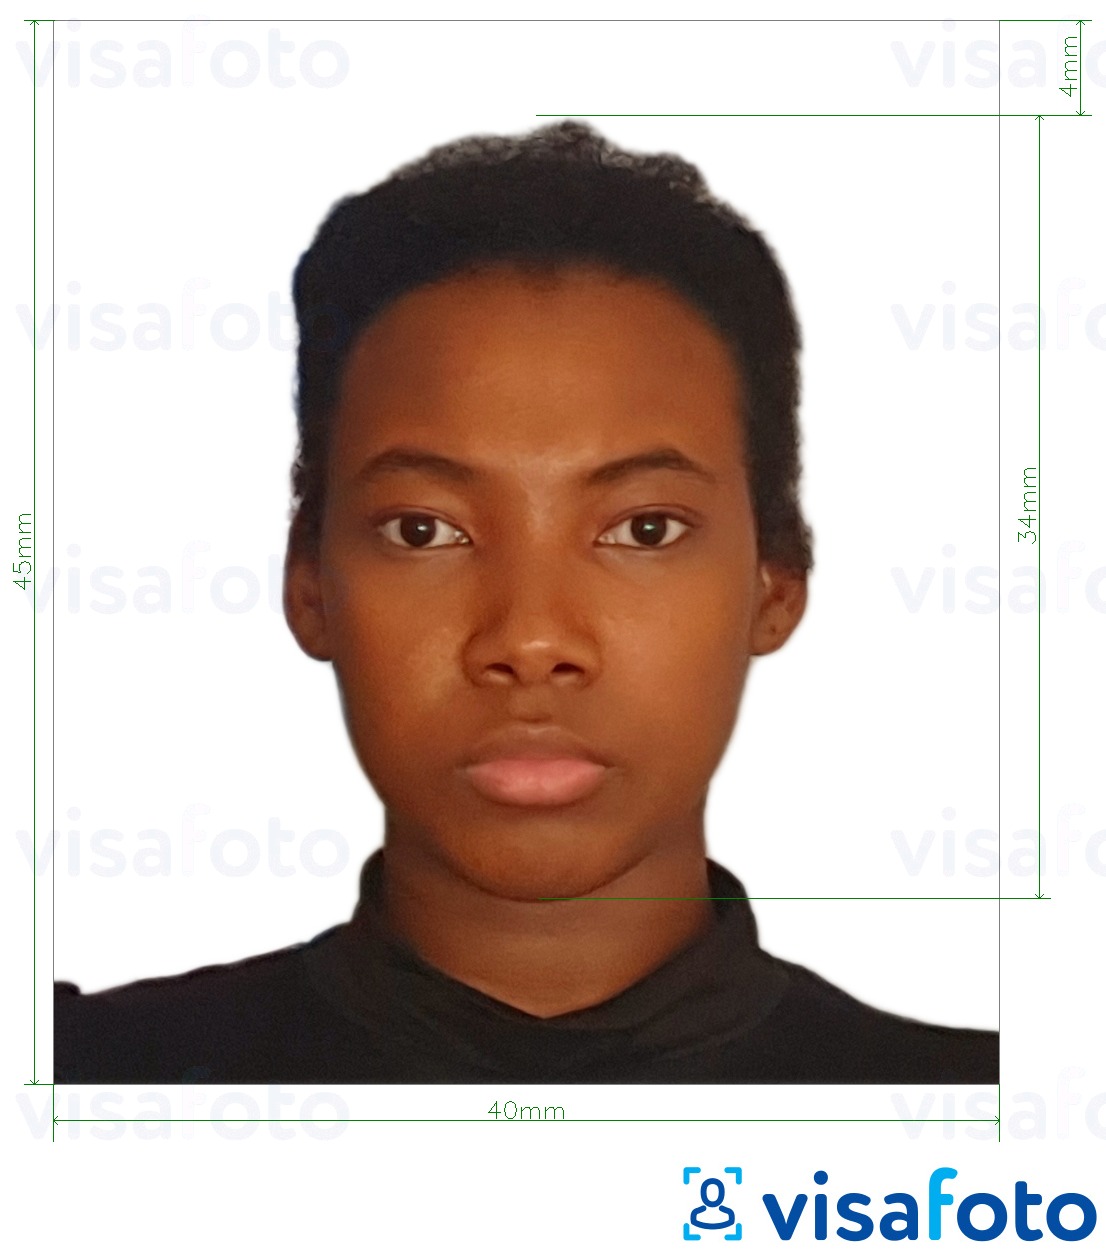 Tam boyut belirtimi olan Tanzanya pasaportu 40x45 mm (4x4,5 cm) için fotoğraf örneği